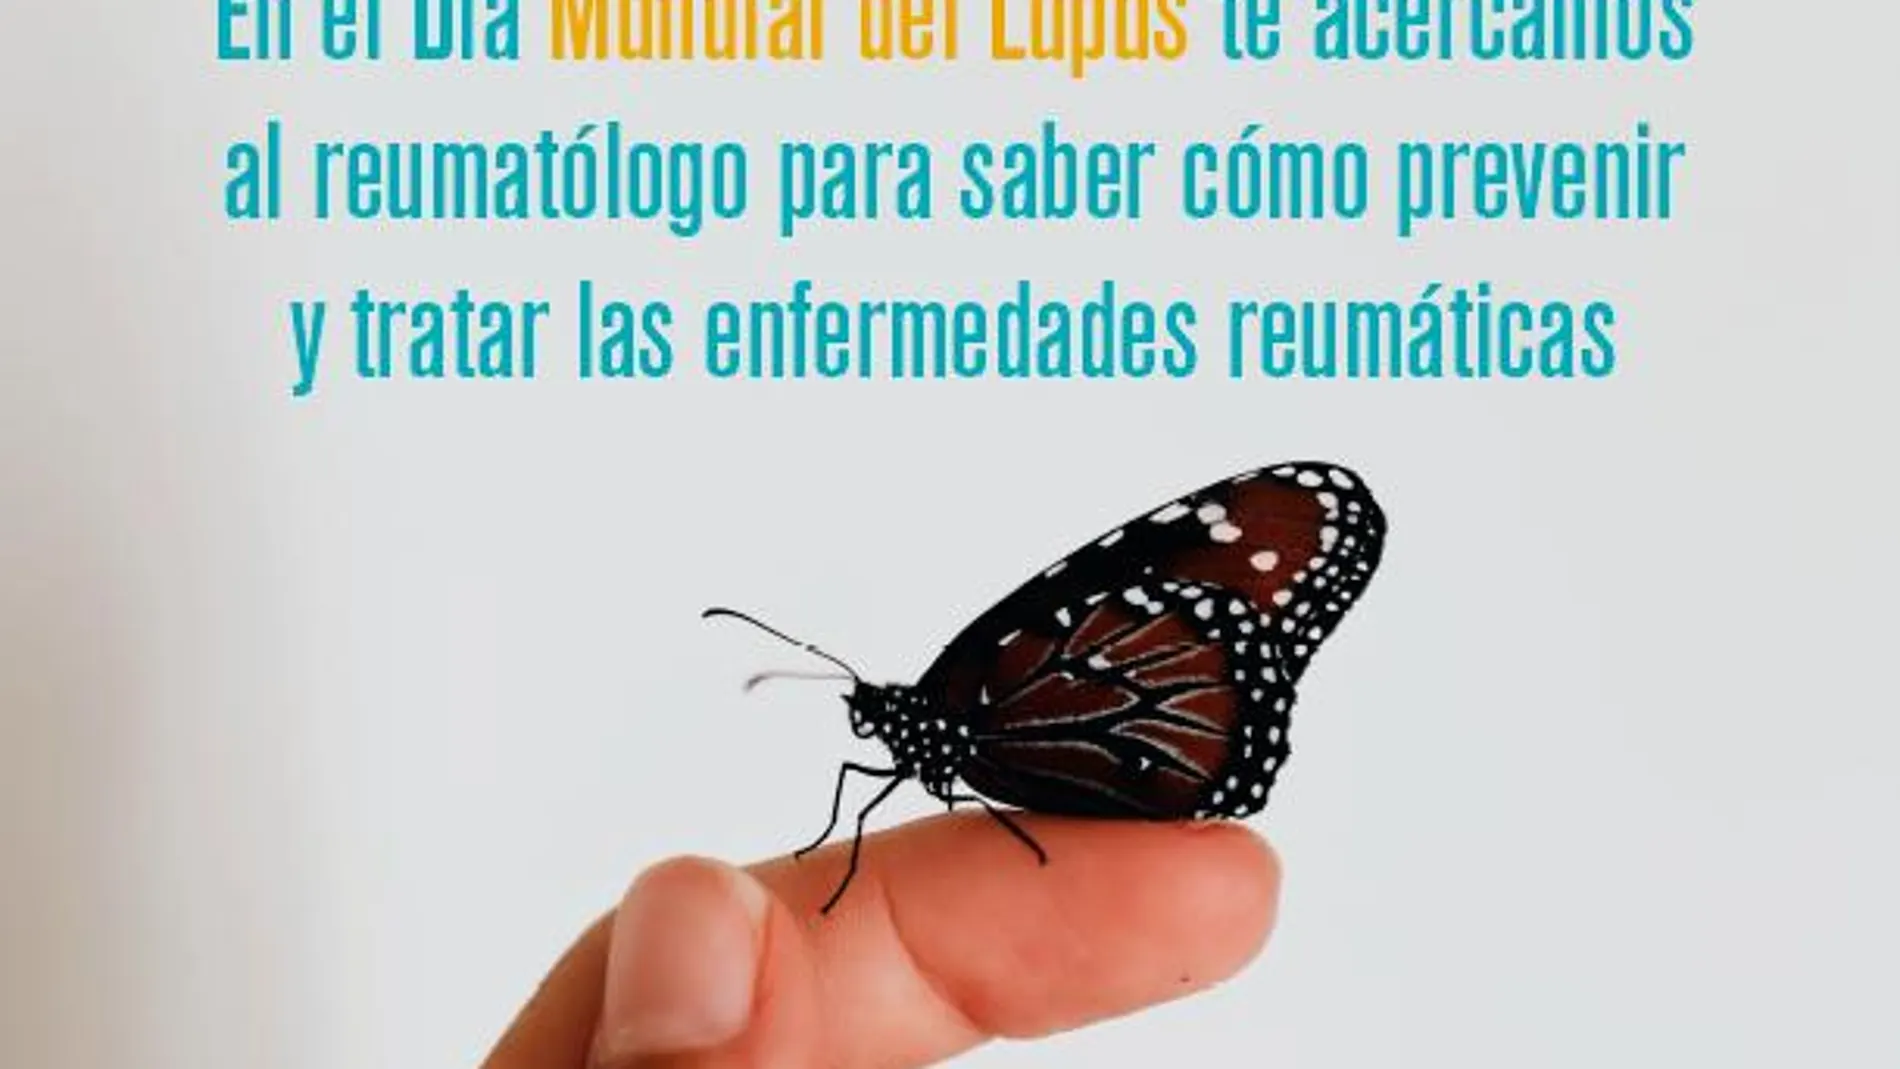 El 70-80% de los casos afecta a las articulaciones de las manos | Sociedad Española de Reumatología